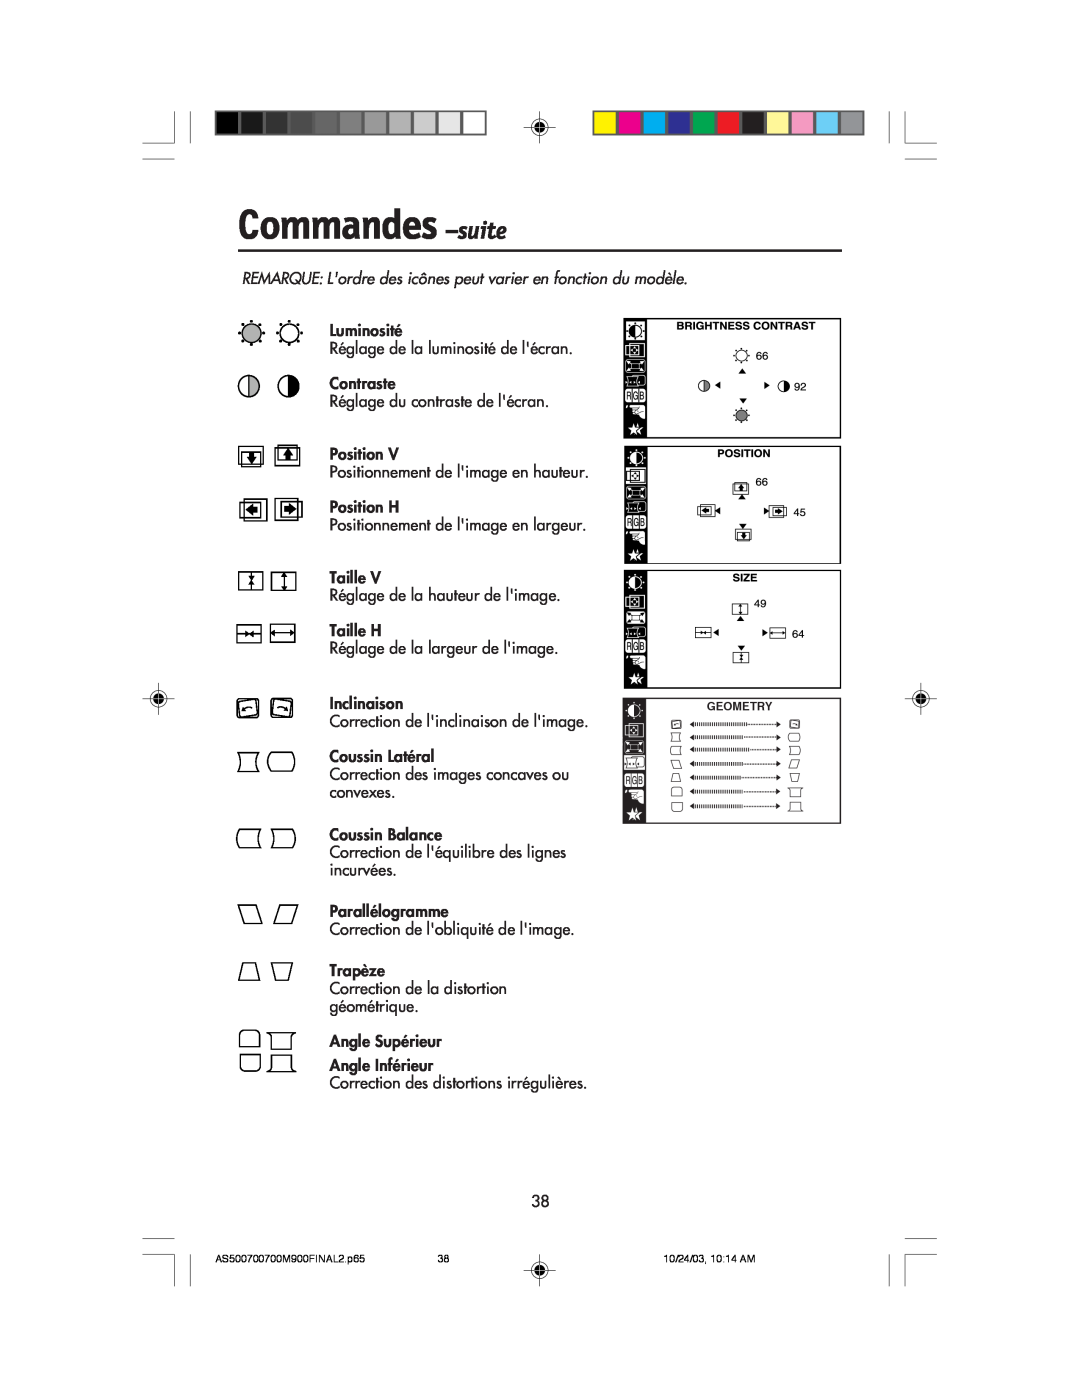 NEC 700, 900, 500 manual Commandes -suite, REMARQUE Lordre des icnes peut varier en fonction du modle 